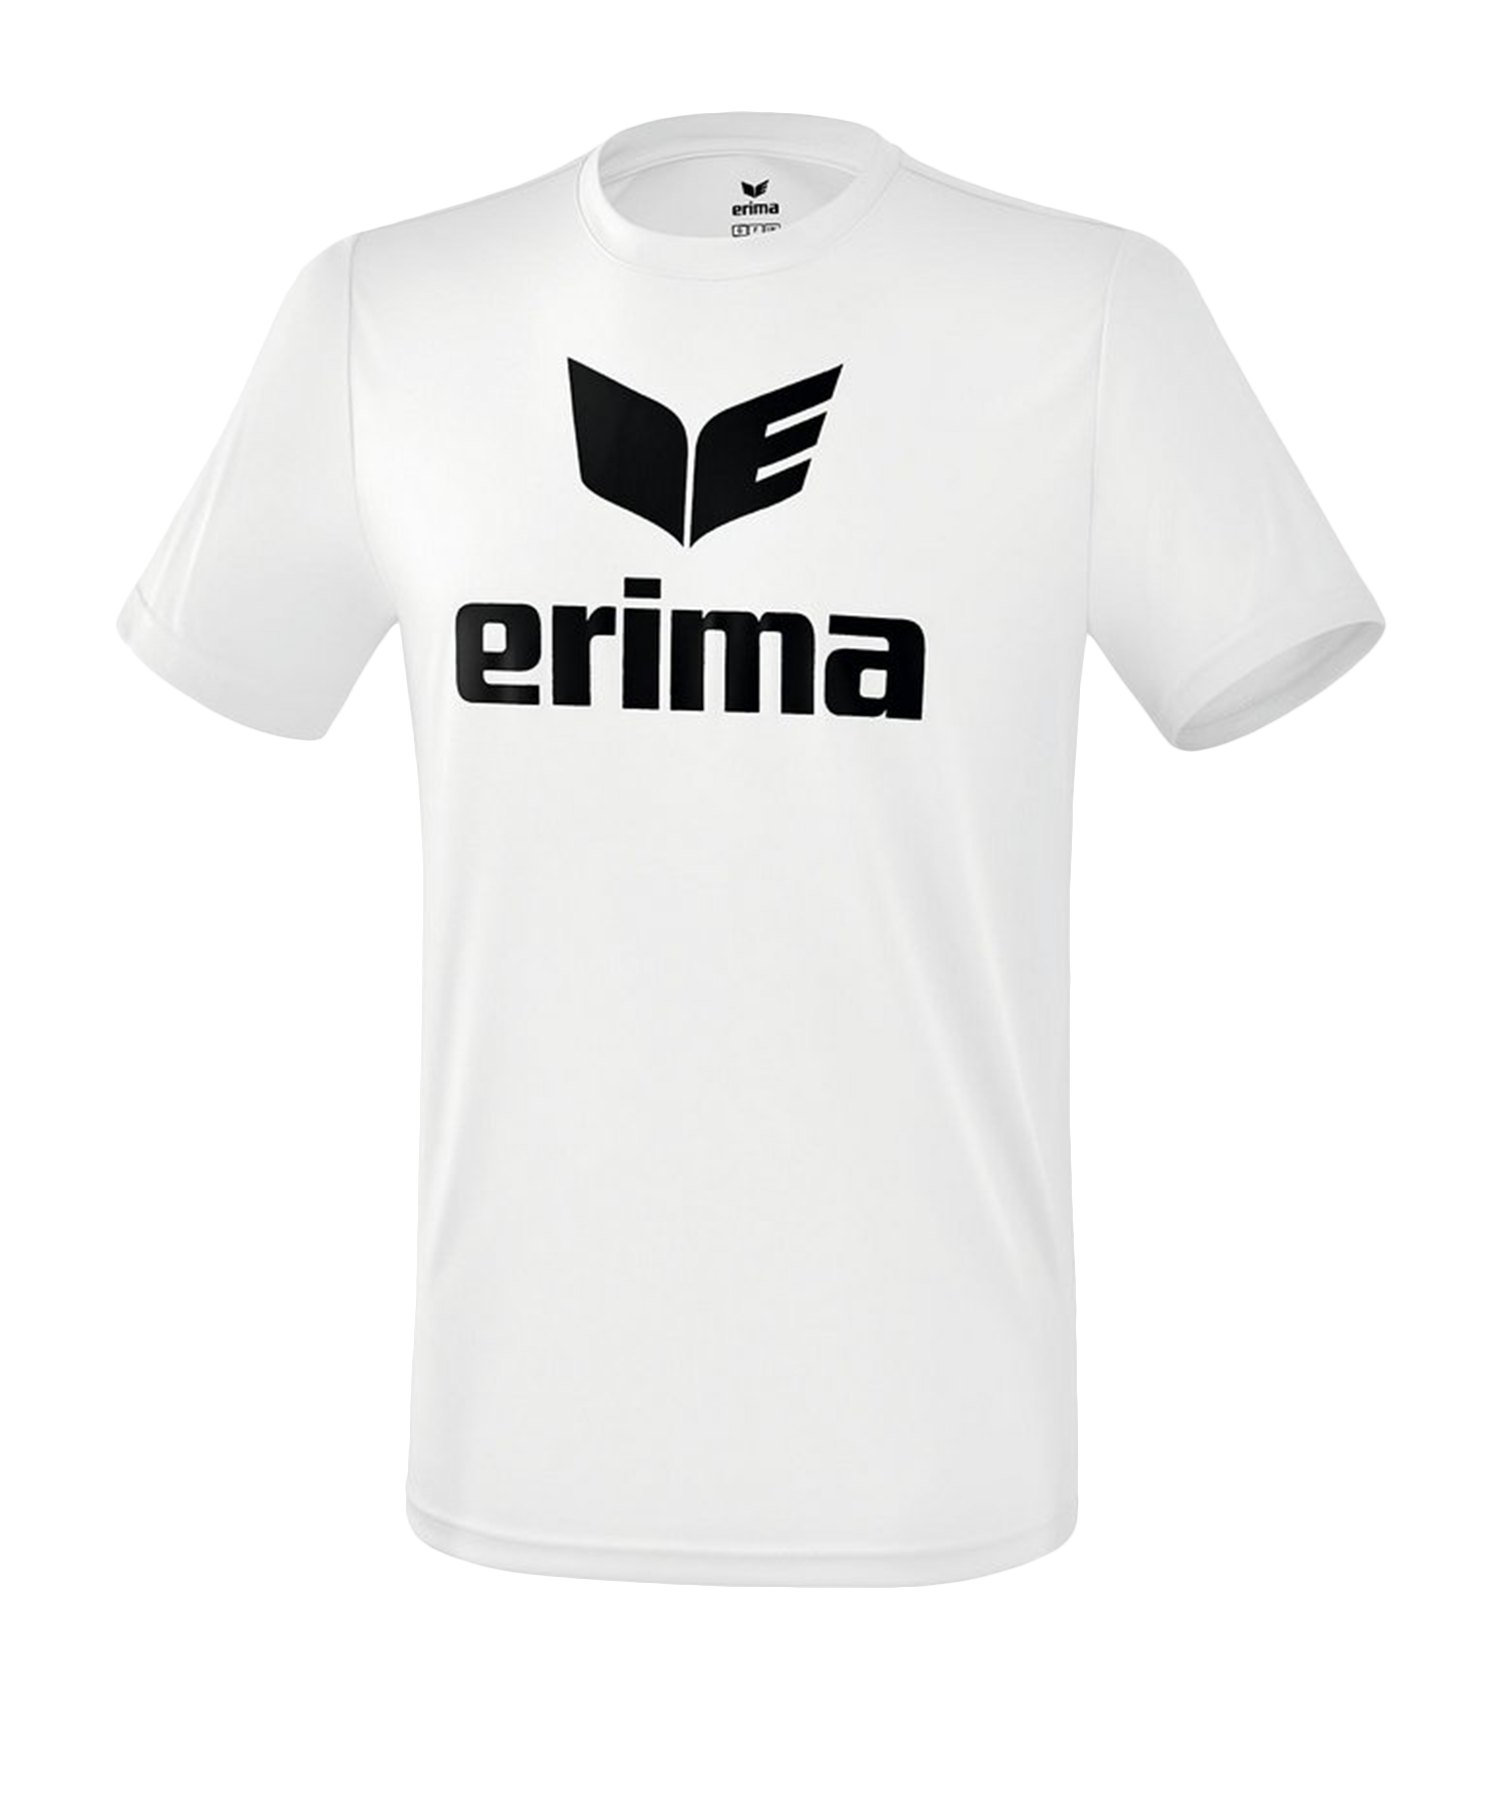 Erima Funktions Promo T-Shirt Kids Weiss Schwarz - Weiss